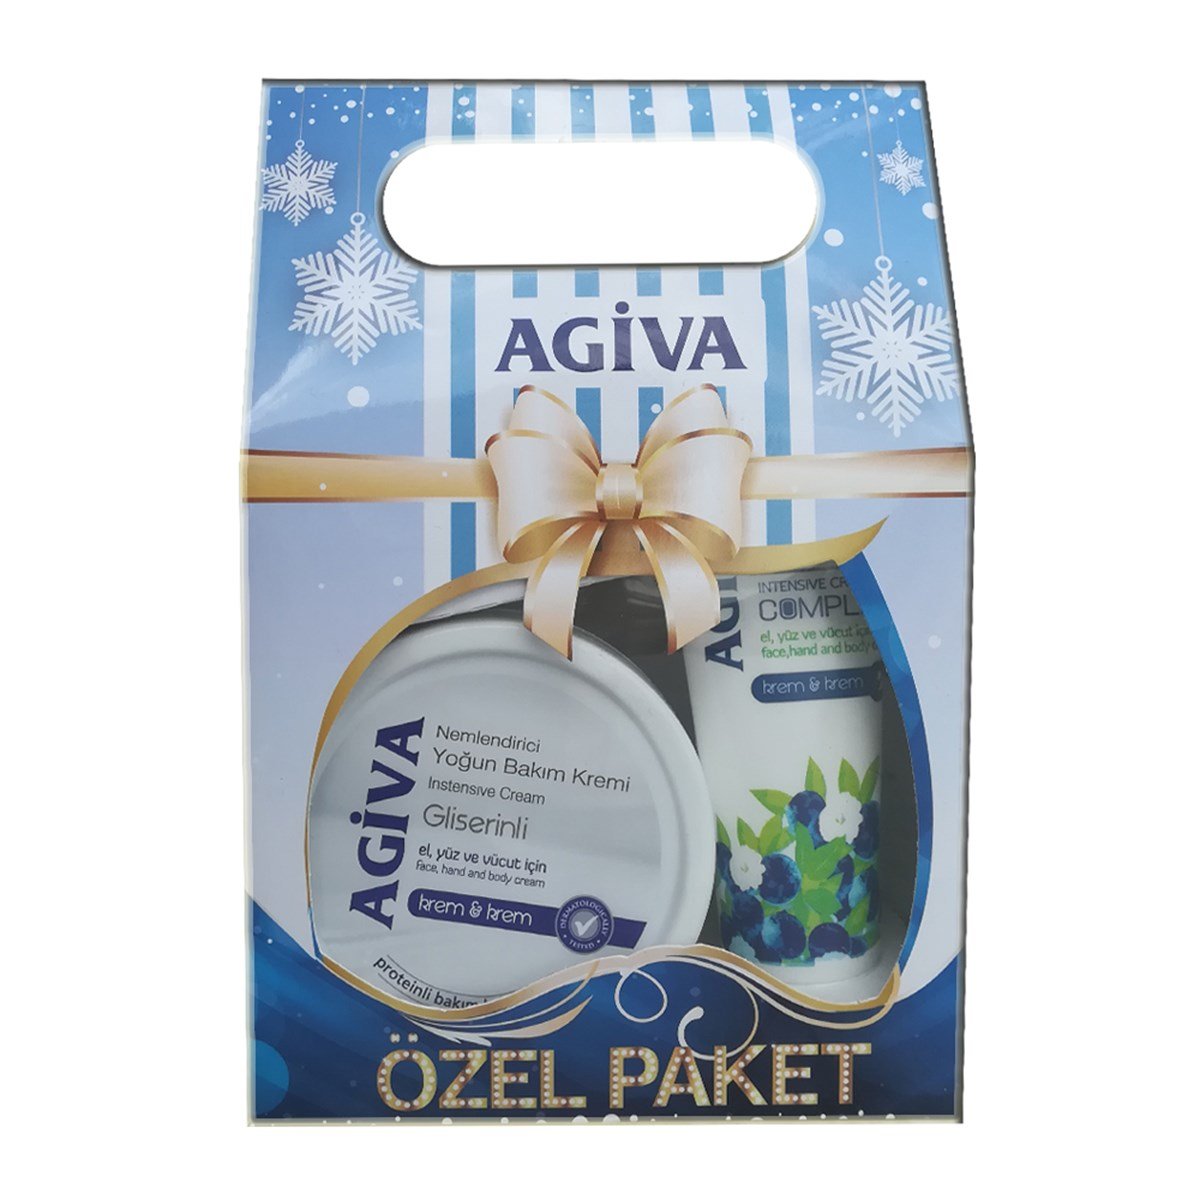 Agiva Soft Gliserinli Nemlendiricili Bakım Kremi Özel Paket 300 ml + 75 ml  - Platin